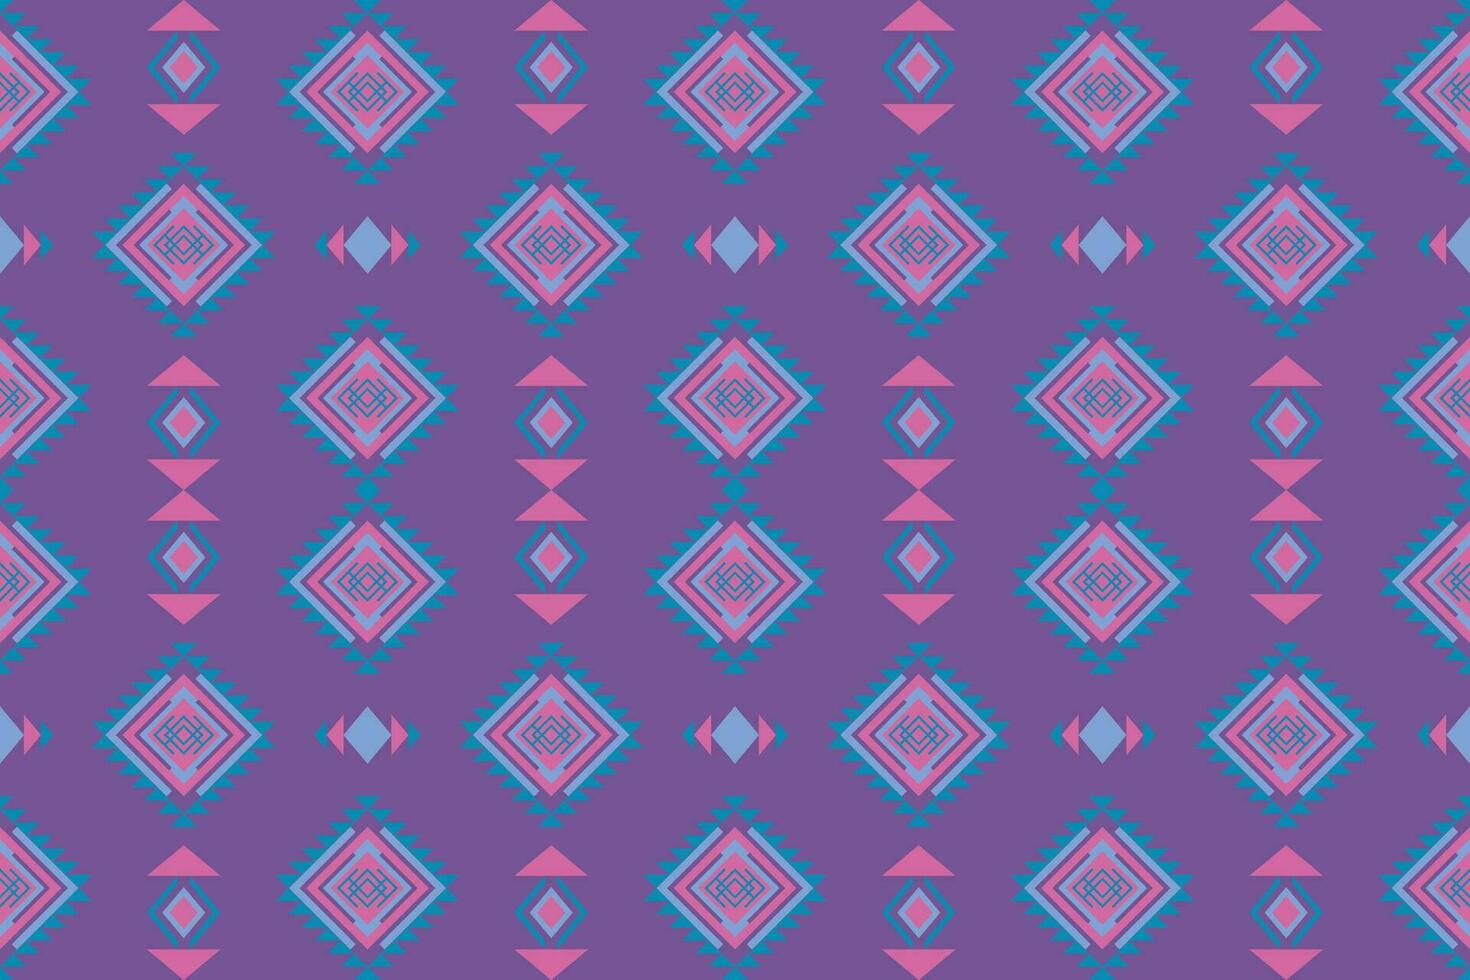 abstrait traditionnel ethnique populaire antique graphique en tissu ligne.fond textile vecteur illustration fleuri élégant ancien style.natif aztèque boho vecteur conception.